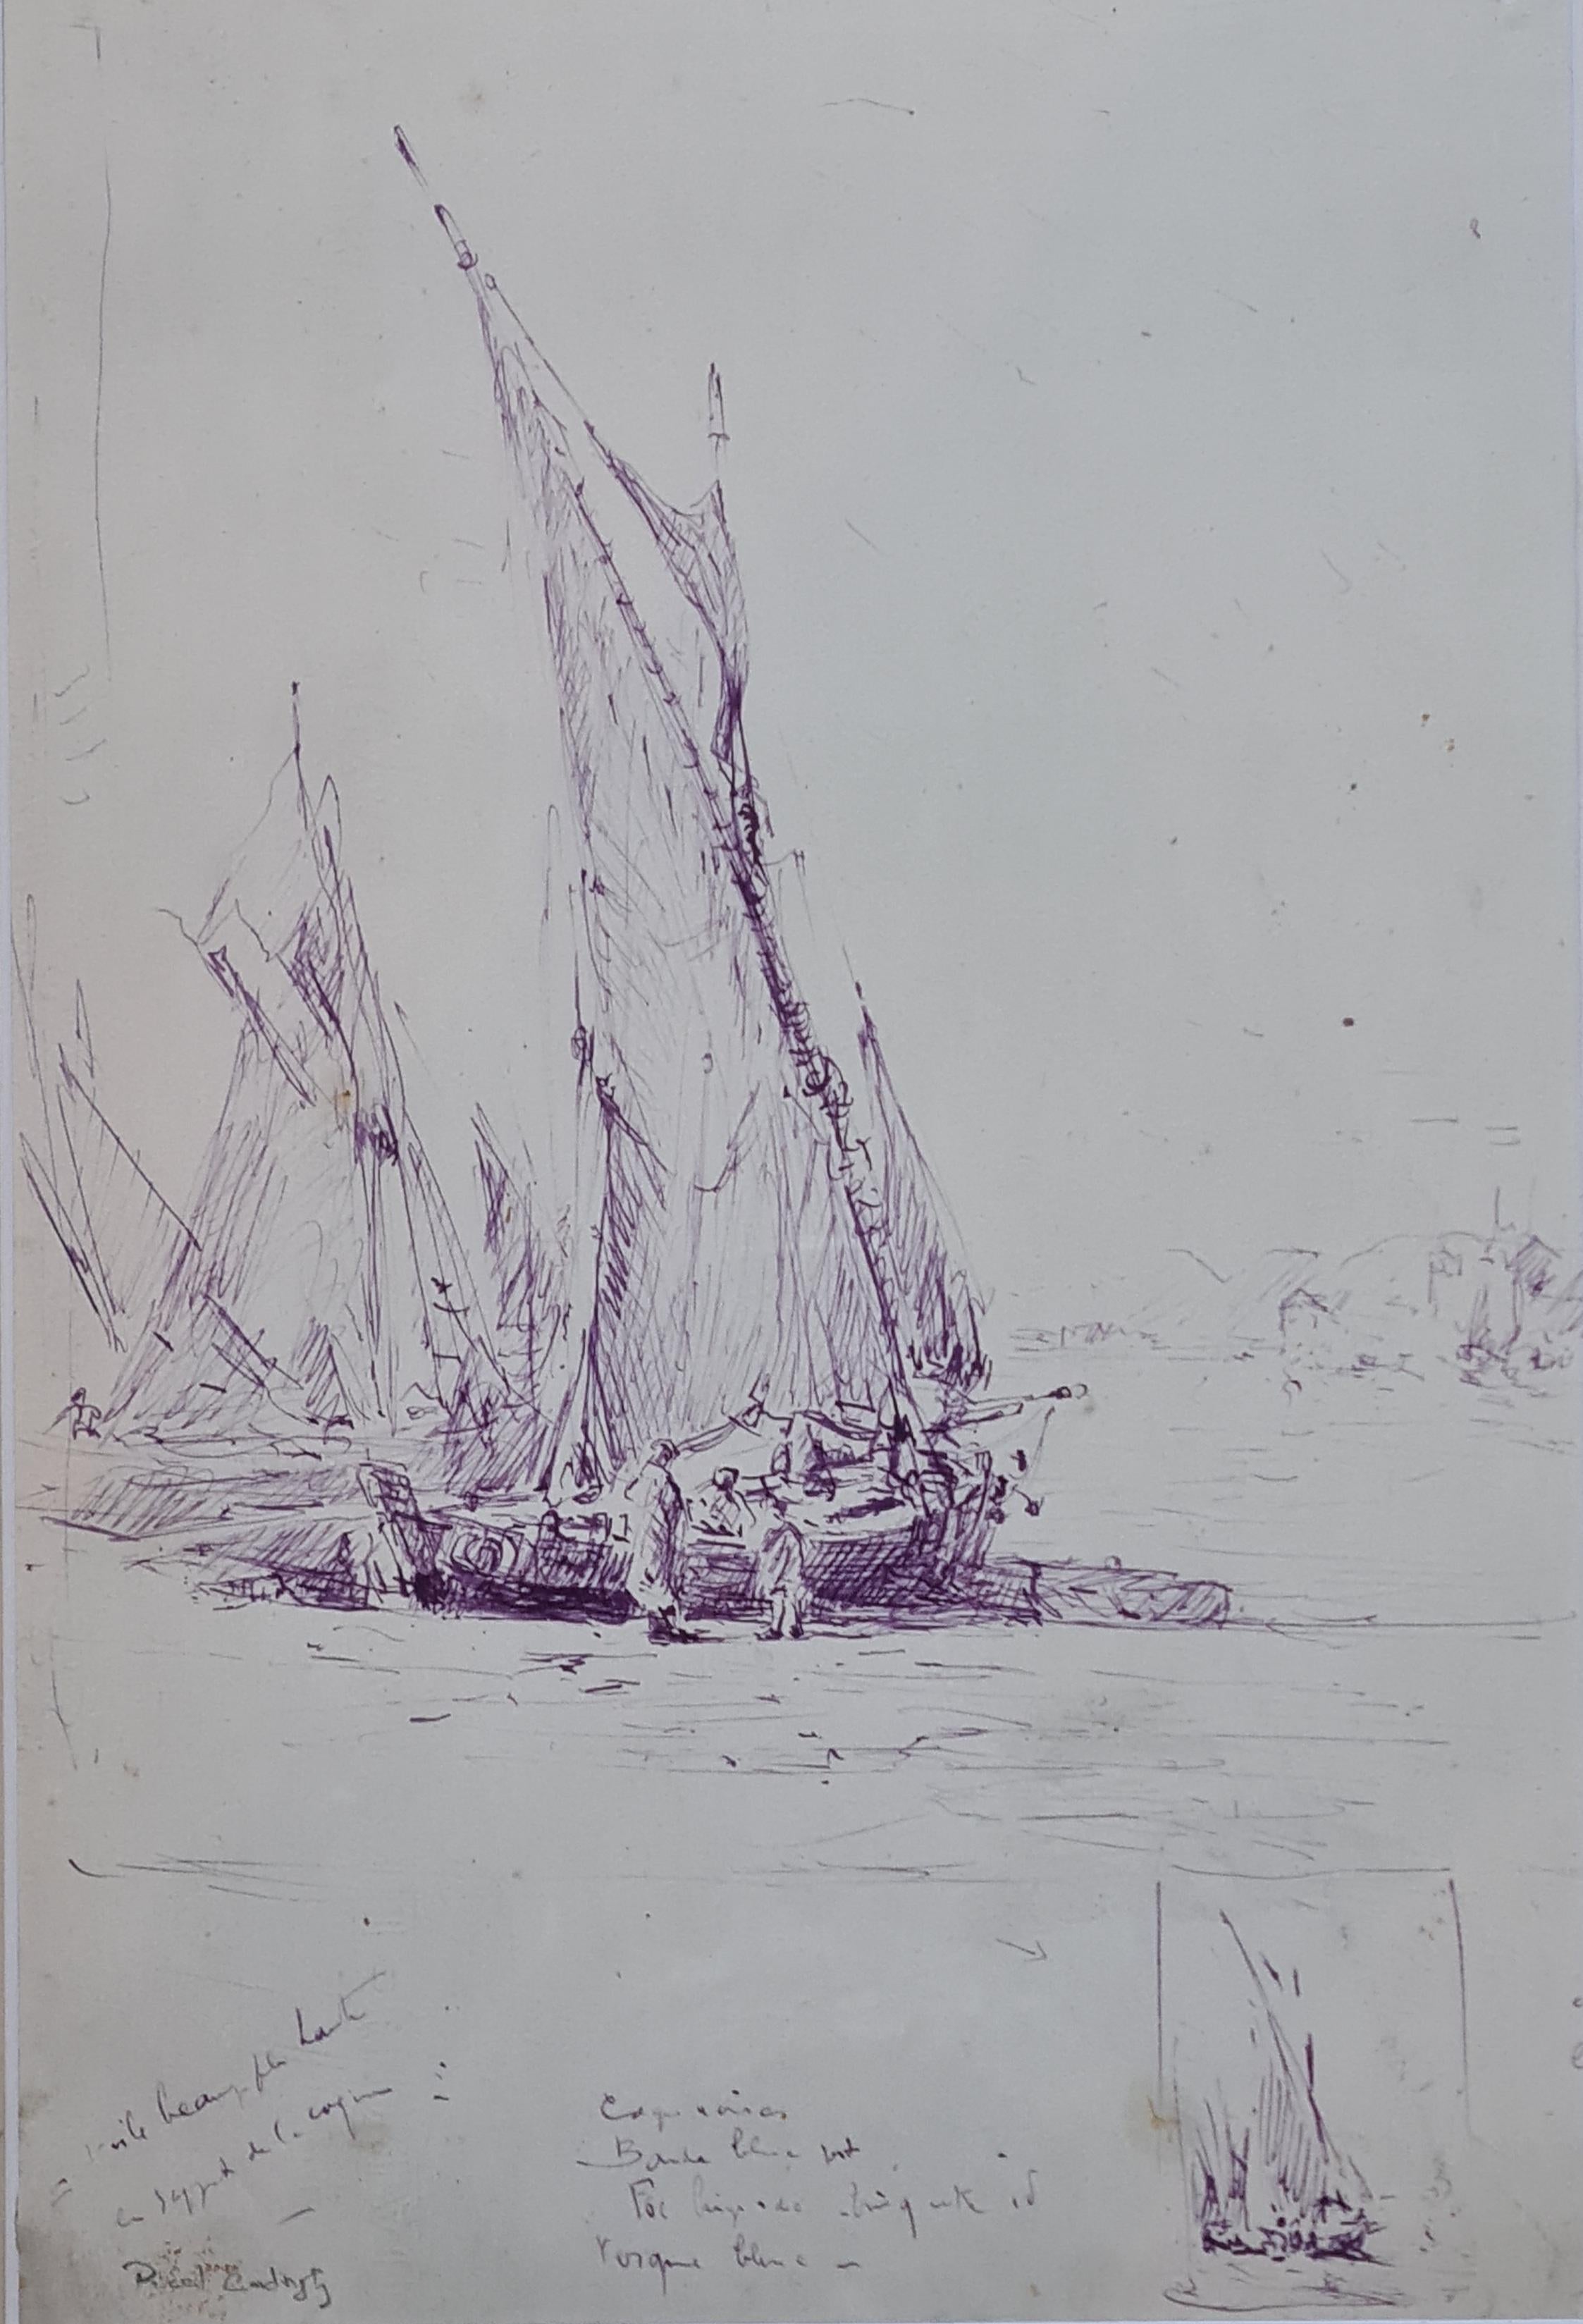 Fischboote, französische Mauve-Tinte-Zeichnung der Marine, spätes 19. Jahrhundert – Art von Georges Ricard-Cordingley